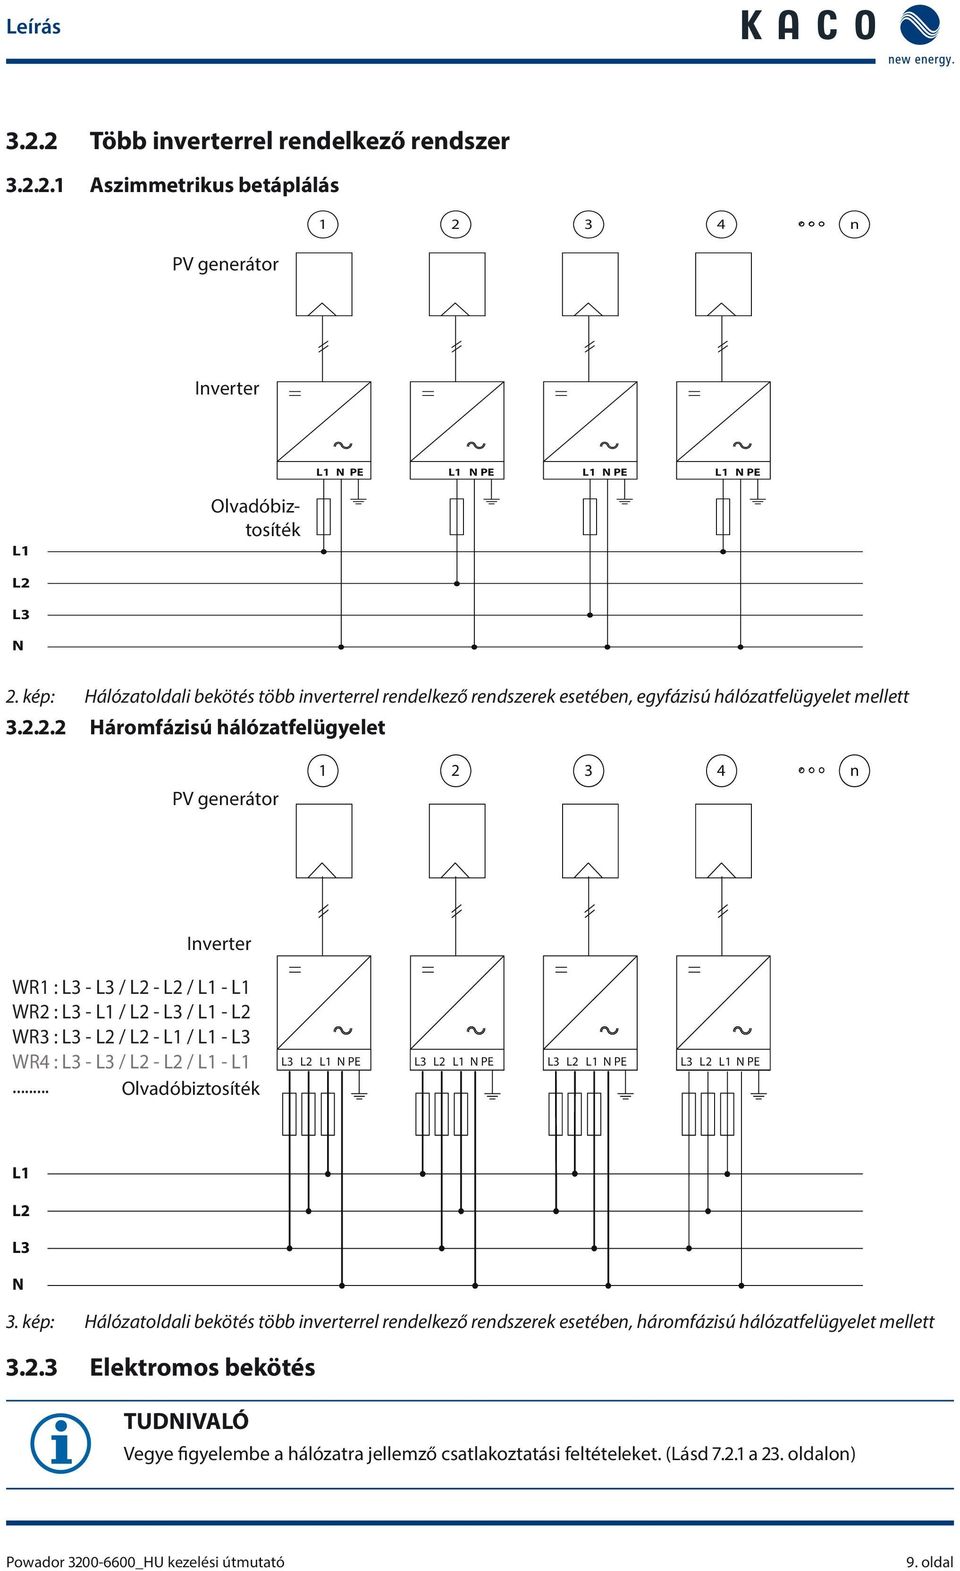 2.2 Háromfázisú hálózatfelügyelet PV generátor 4 n Inverter WR1 : L3 - L3 / L2 - L2 / L1 - L1 WR2 : L3 - L1 / L2 - L3 / L1 - L2 WR3 : L3 - L2 / L2 - L1 / L1 - L3 WR4 : L3 - L3 / L2 - L2 / L1 - L1.